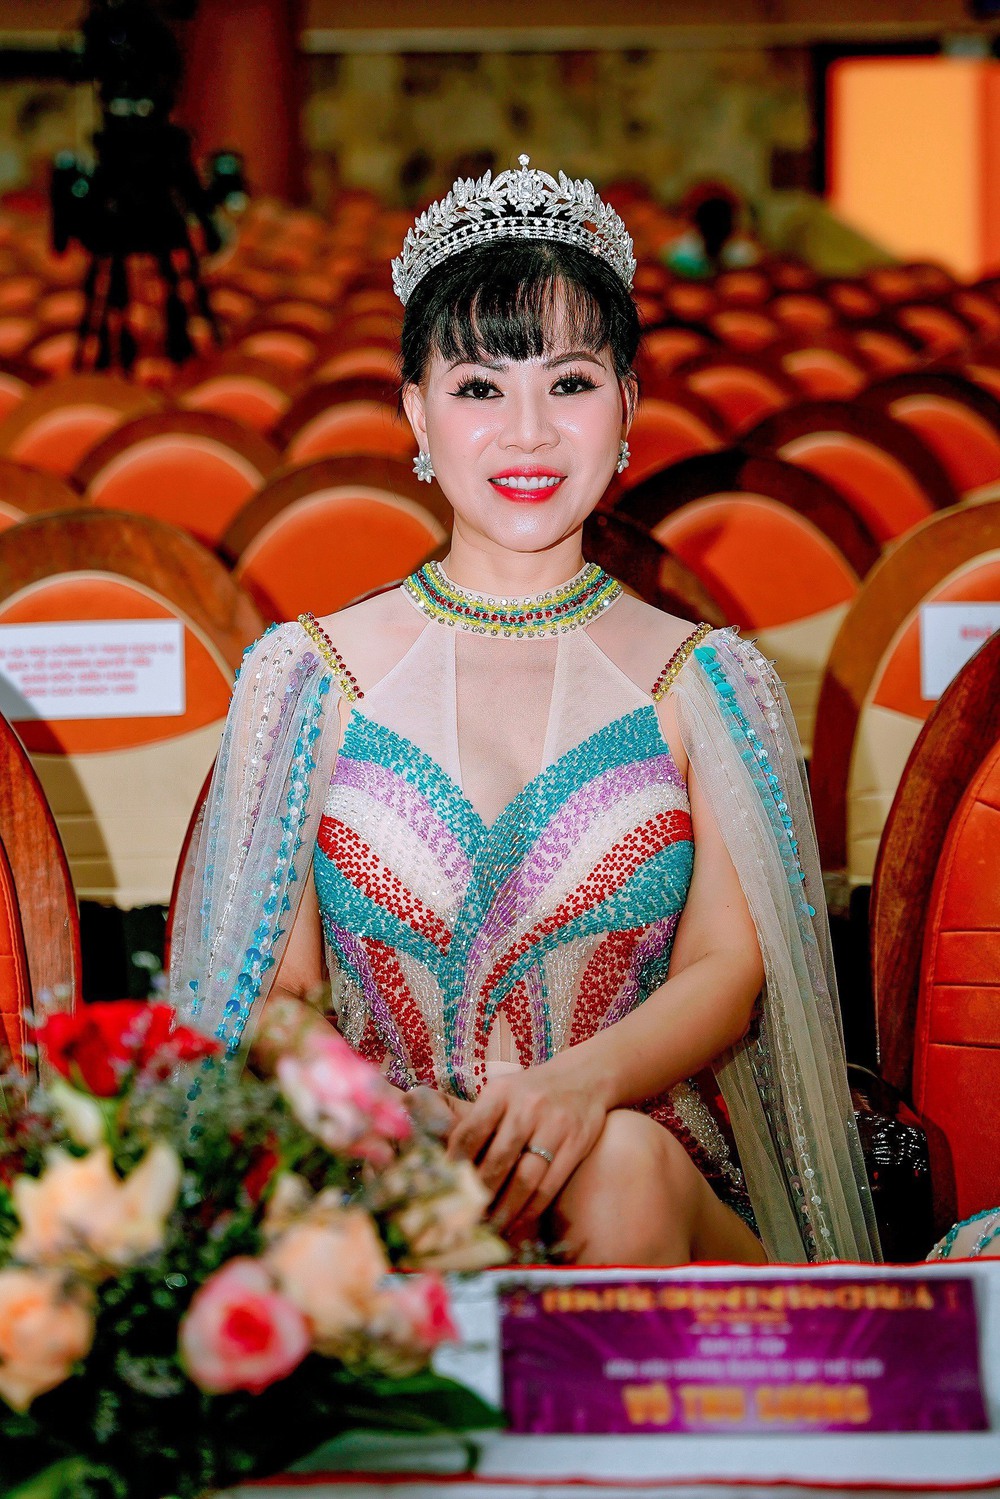 Hoa hậu Võ Thu Sương diện đầm gợi cảm, nổi bật trên hàng ghế giám khảo - Ảnh 4.